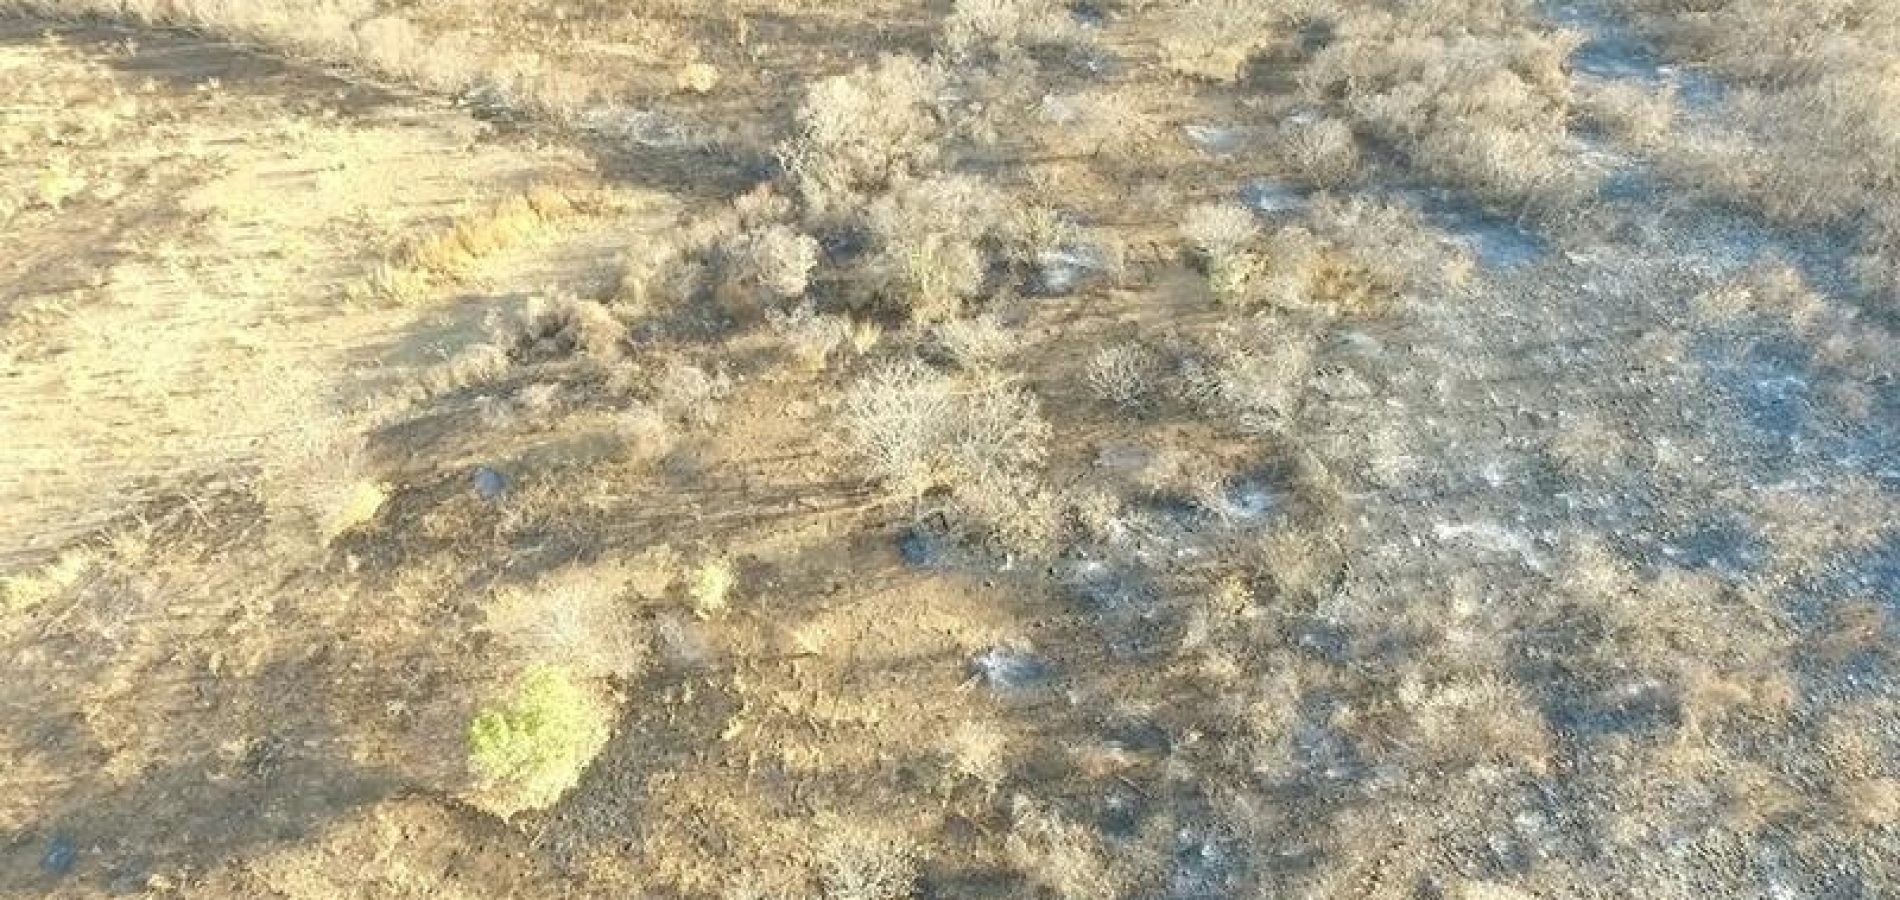 Plantação de maconha descoberta por drone abastecia Picos e Jaicós